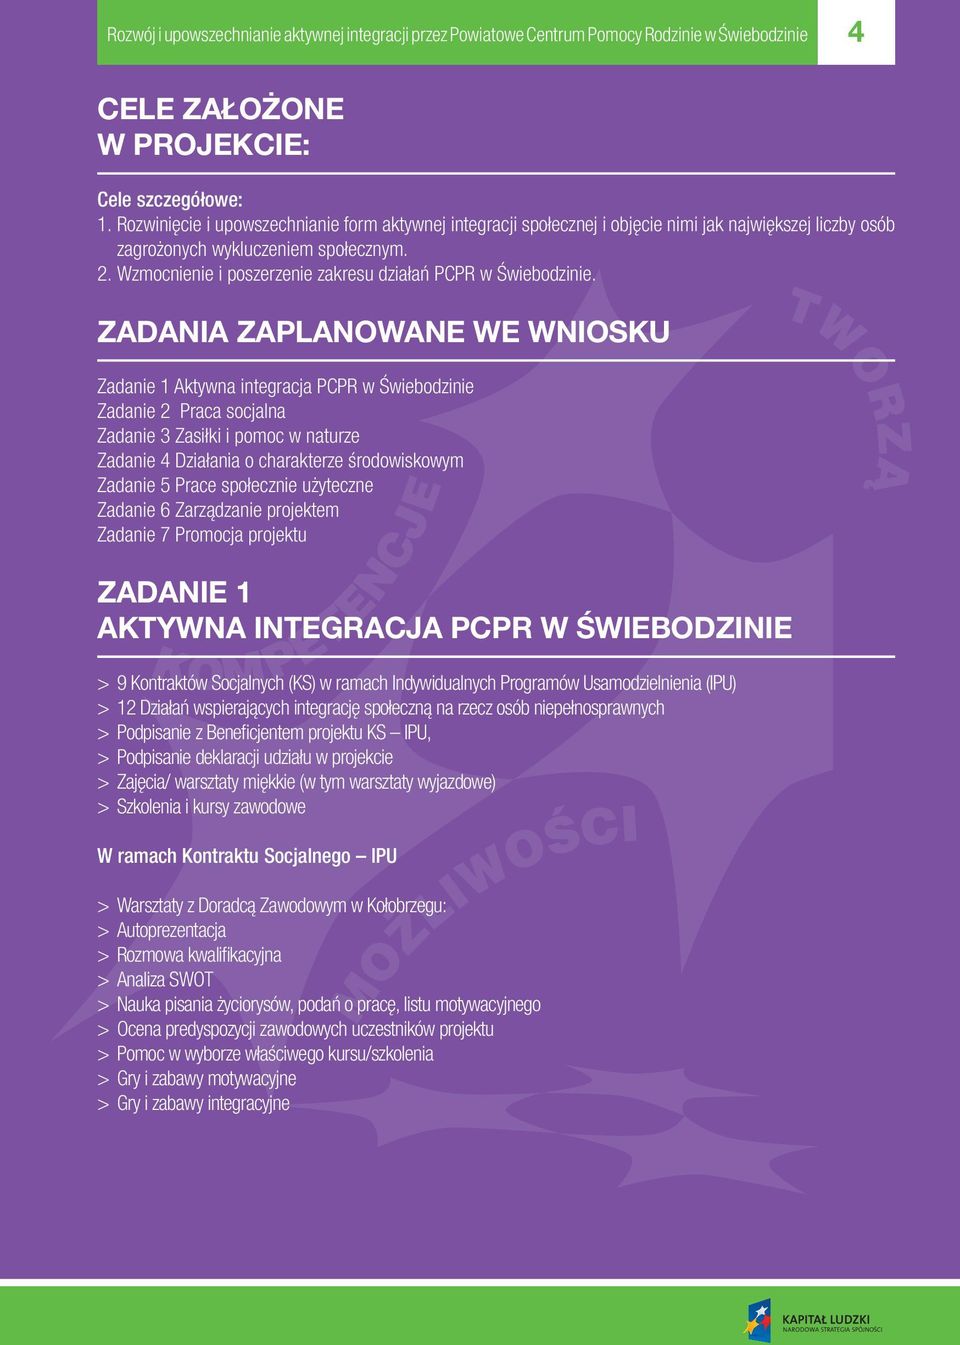 Wzmocnienie i poszerzenie zakresu działań PCPR w Świebodzinie.